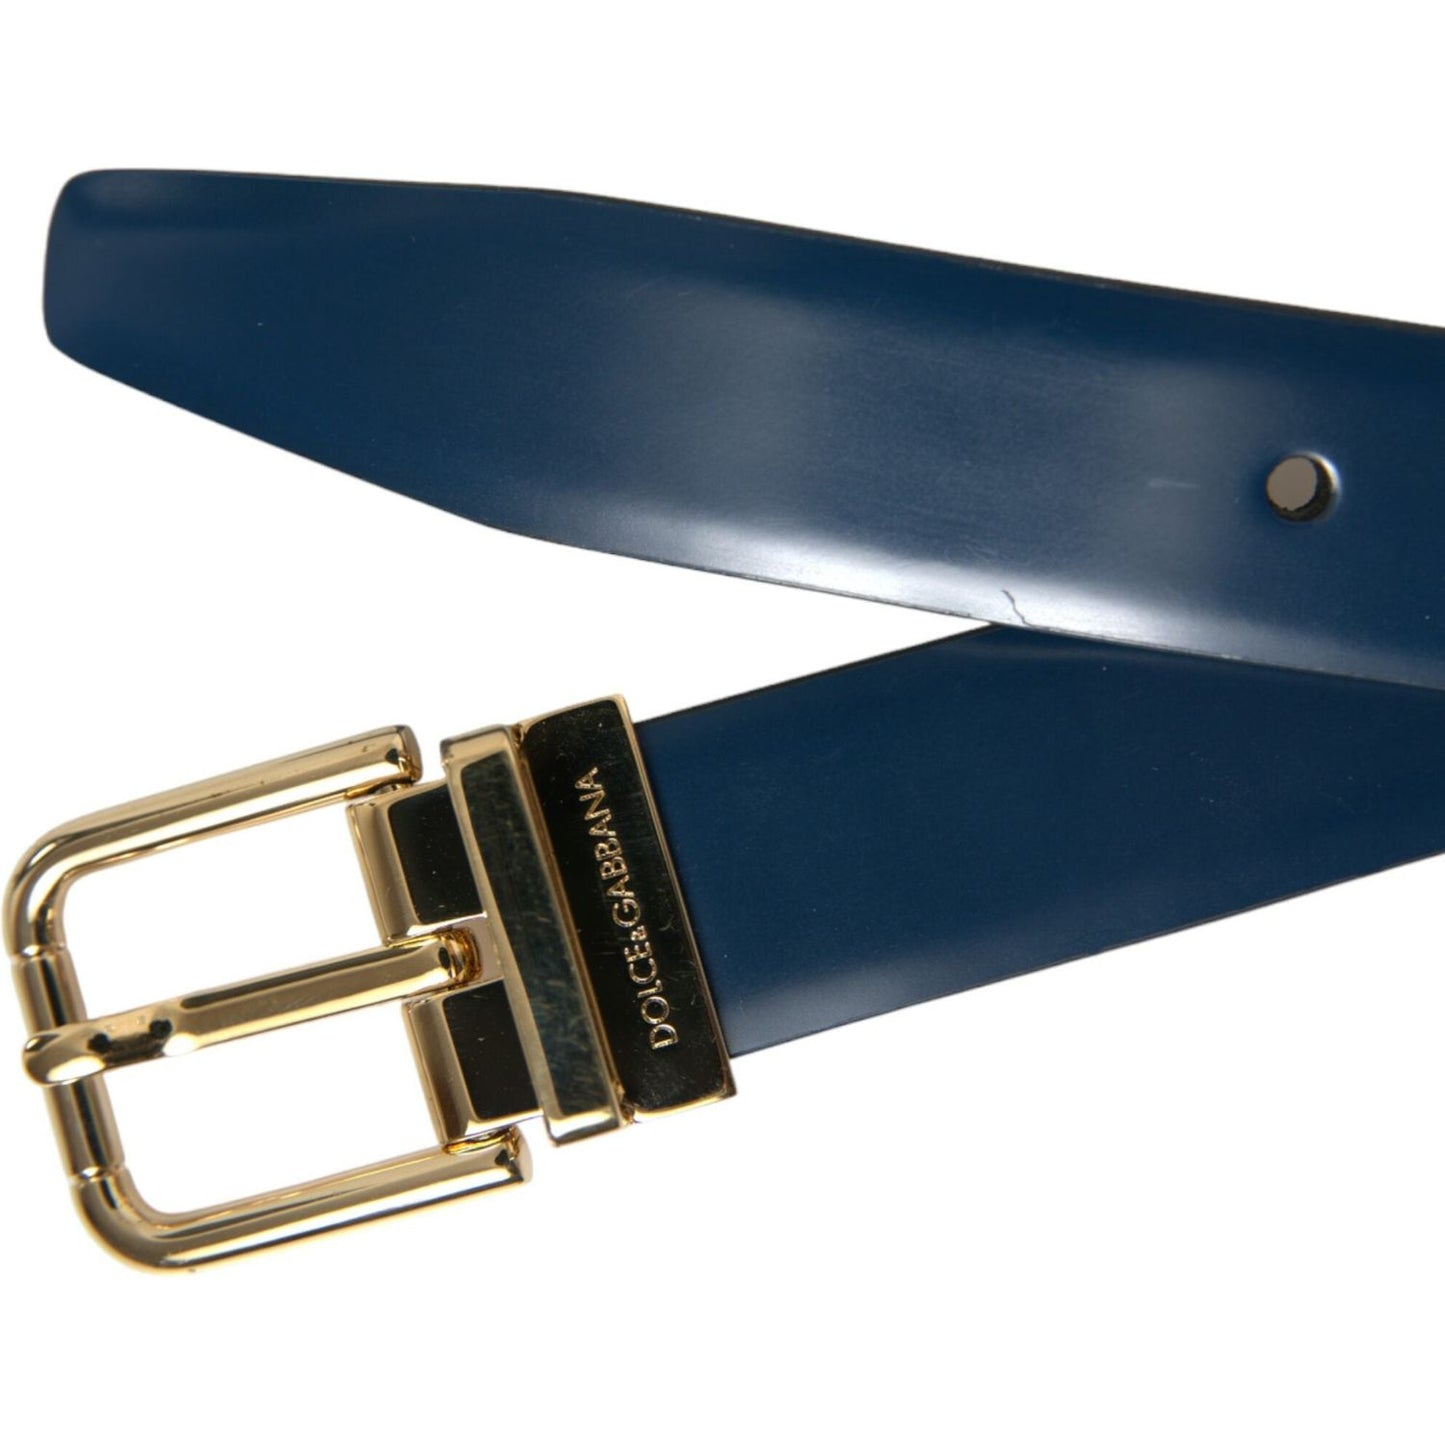 Dolce & Gabbana | Elegant Blue Leather Belt with Metal Buckle| McRichard Designer Brands   